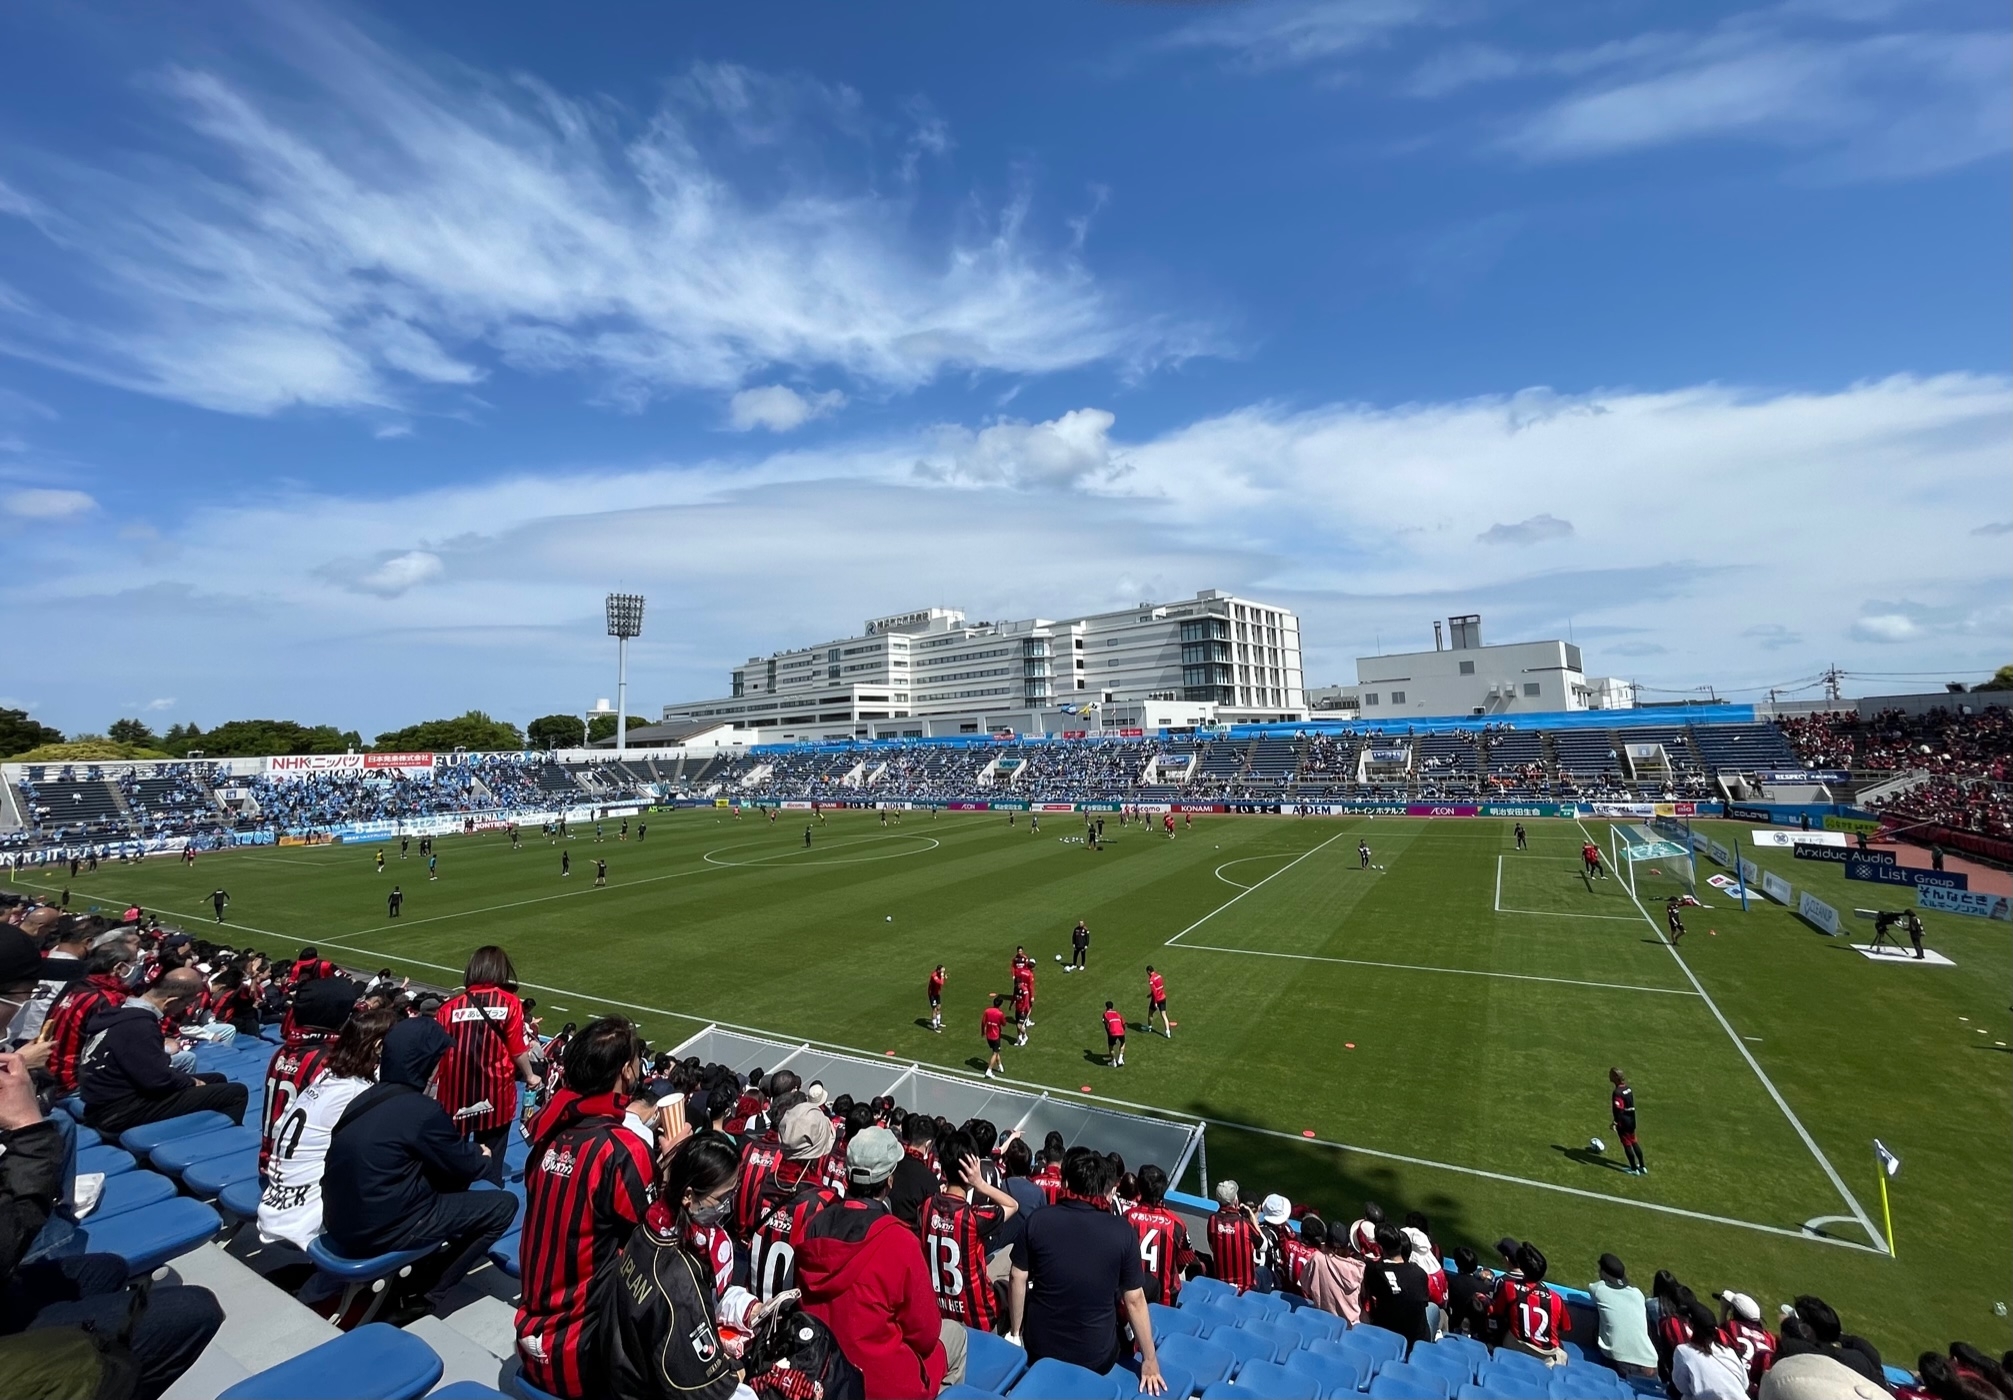 横浜FC琉球